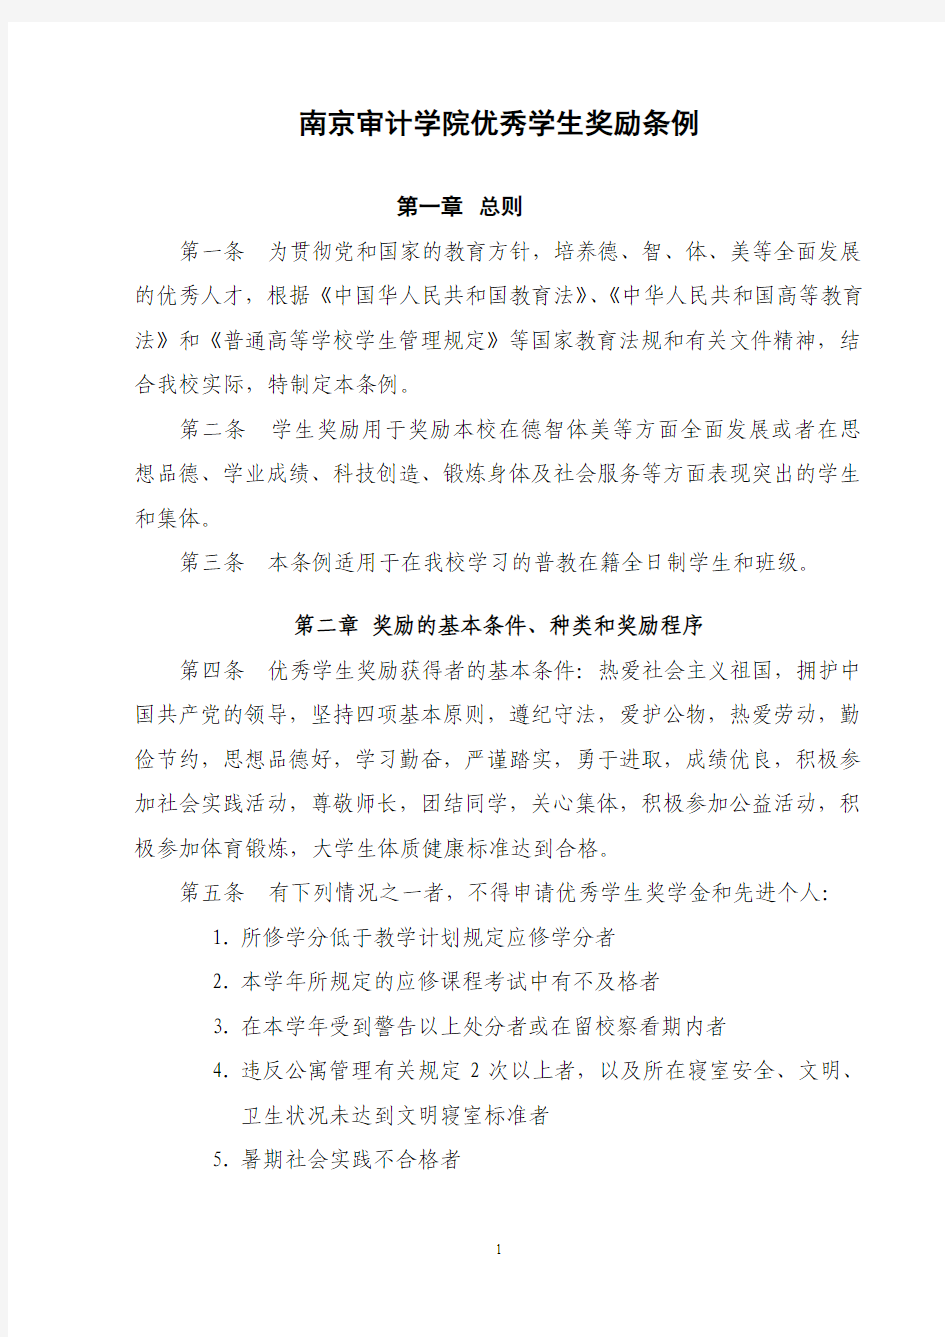 南京审计学院优秀学生奖励条例(2011年)